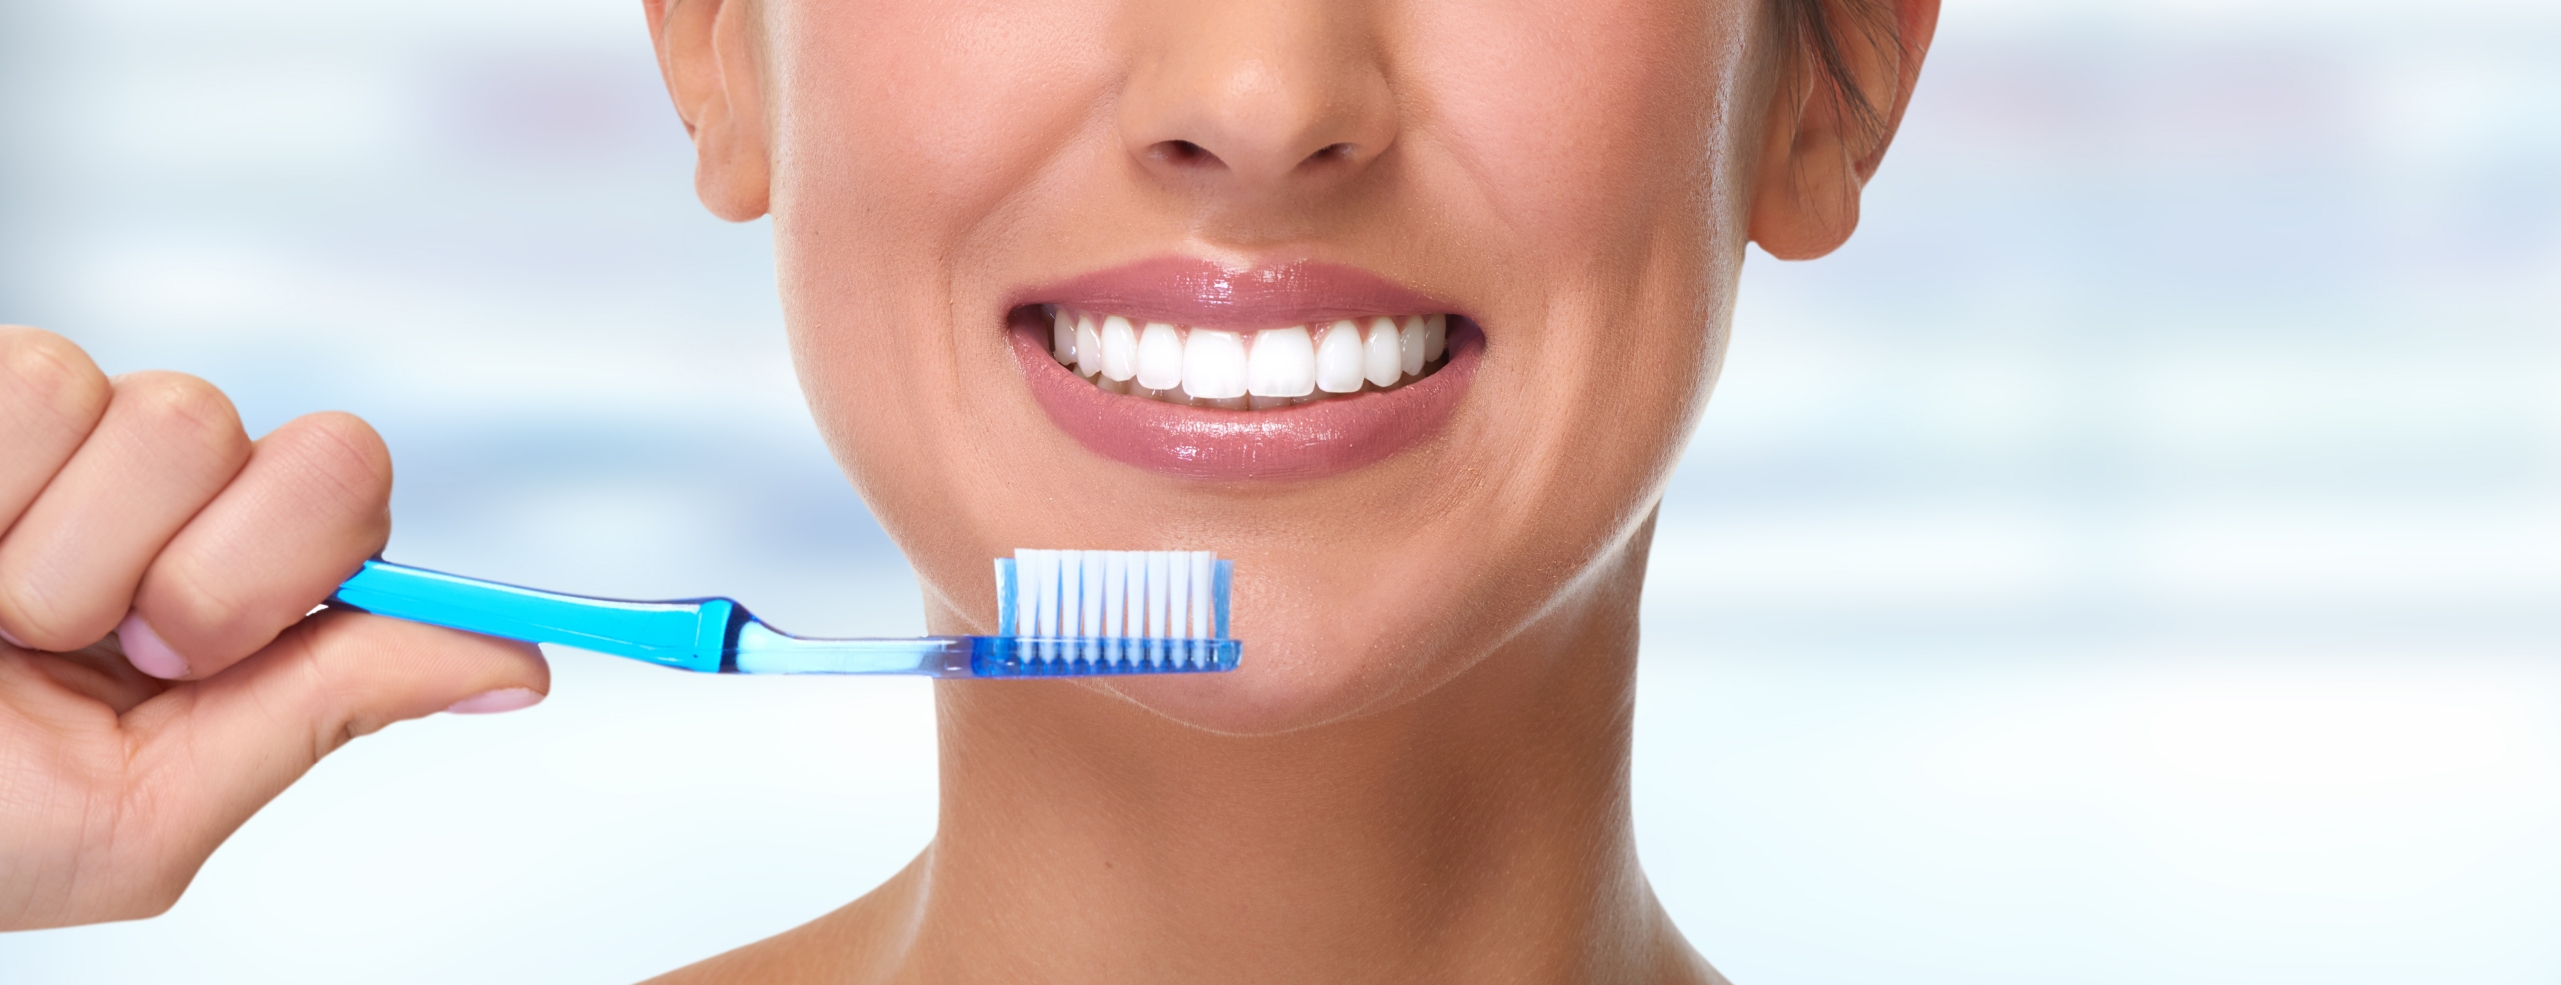 Hábitos de higiene dental